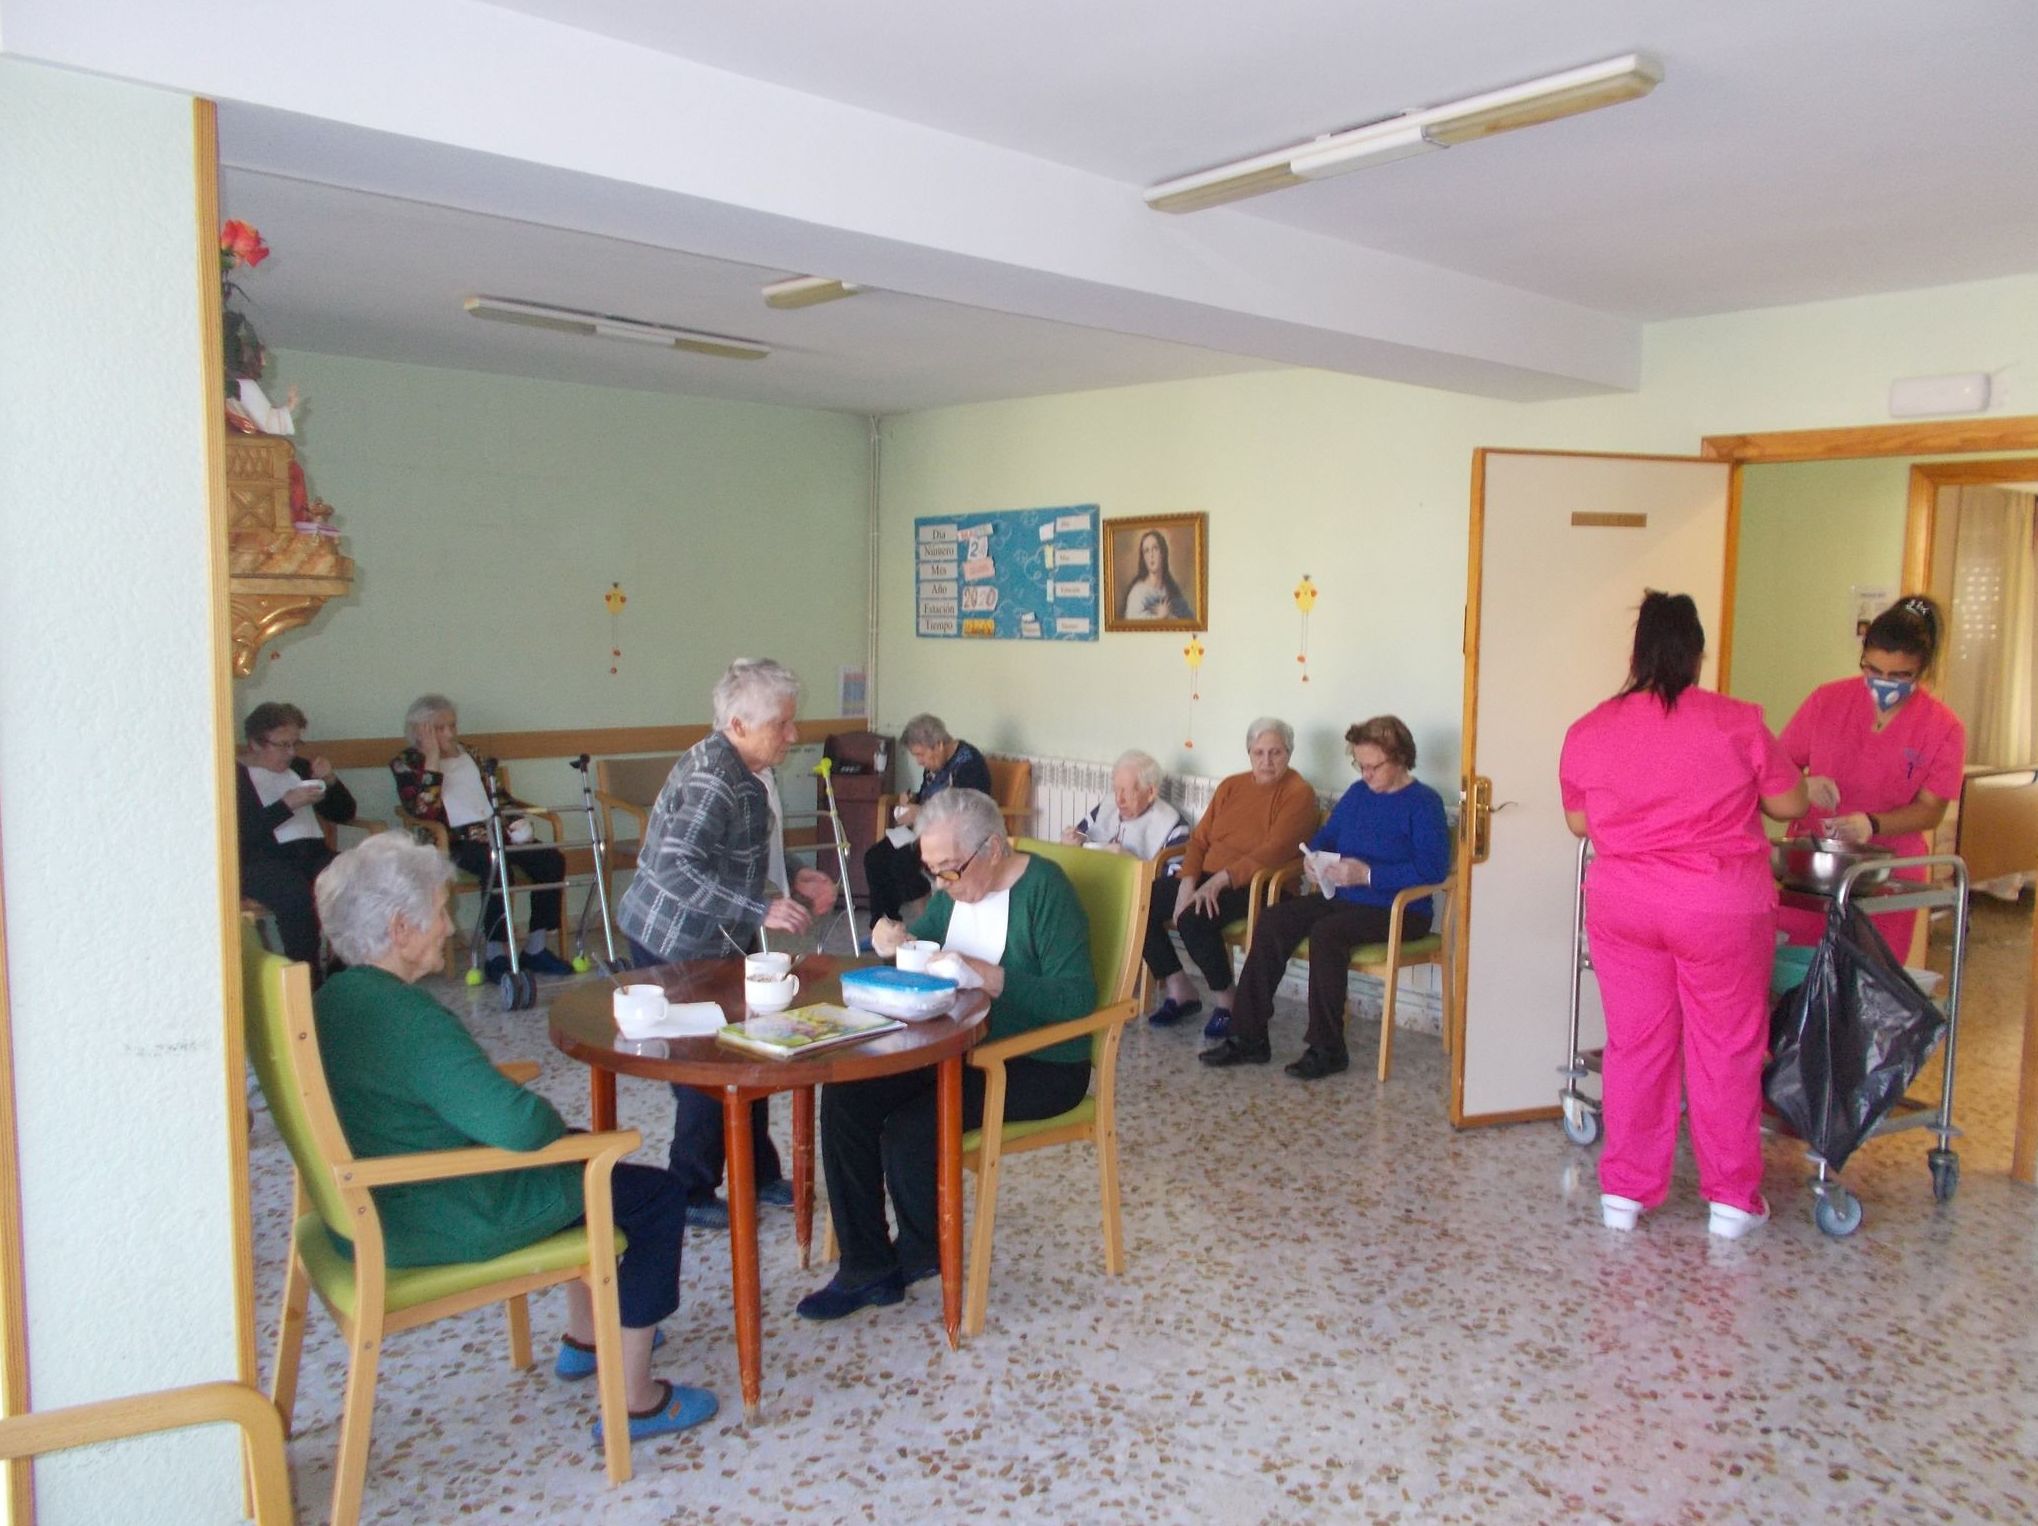 Foto 7 de Residencias geriátricas en  | Hospital San Juan Bautista de Astorga